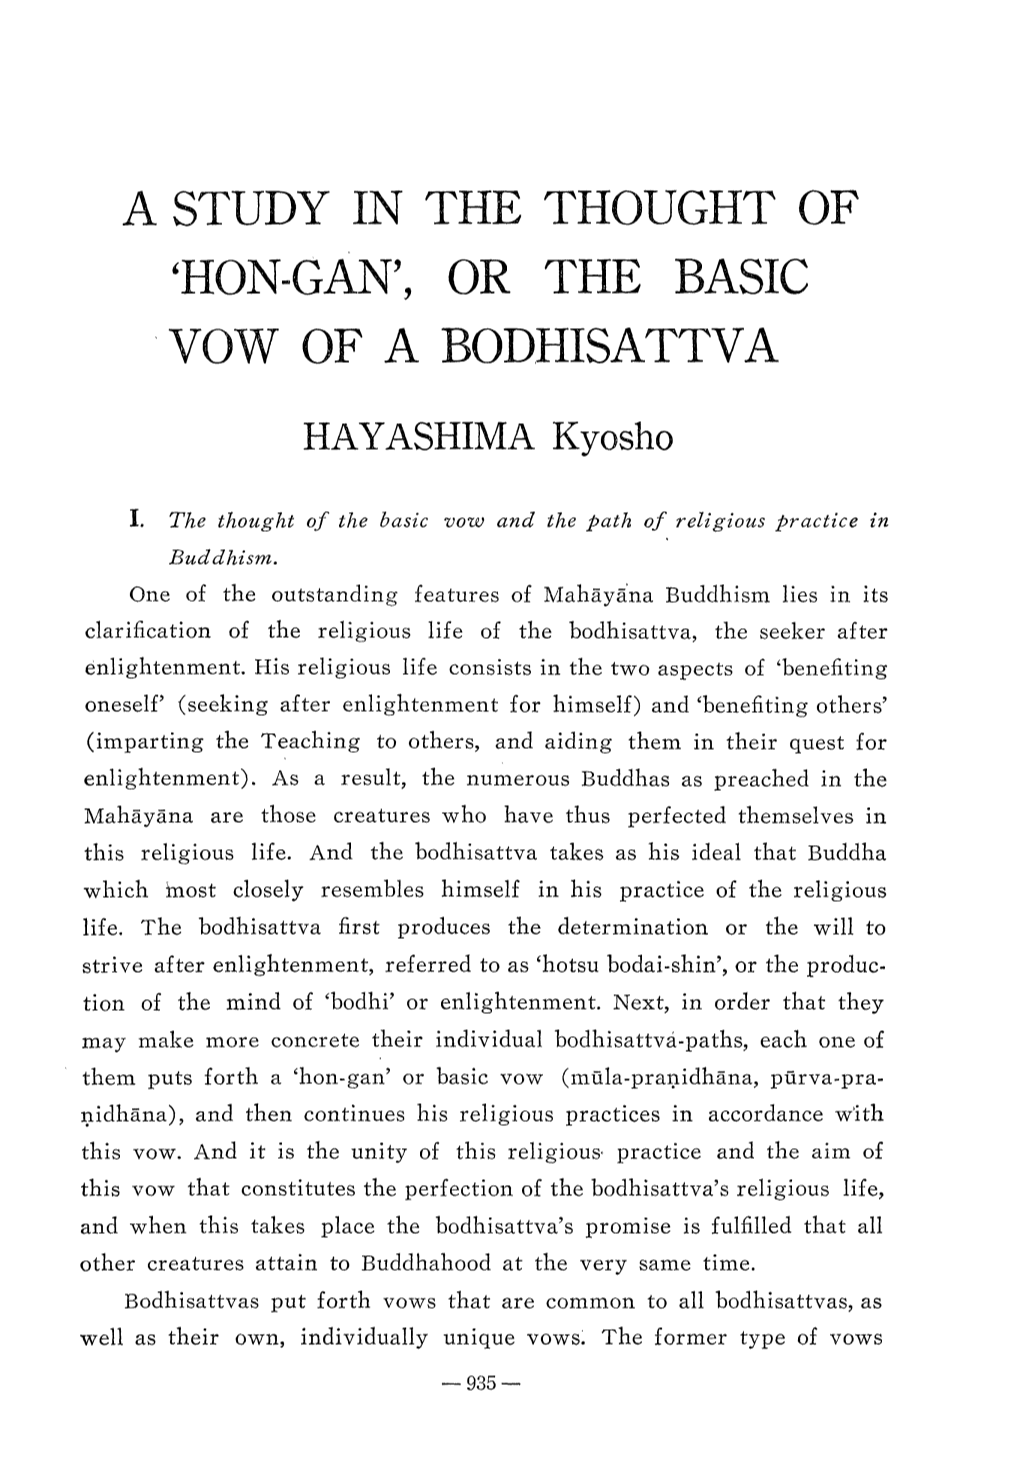 OR the BASIC VOW of a BODHISATTVA HAYASHIMA Kyosho